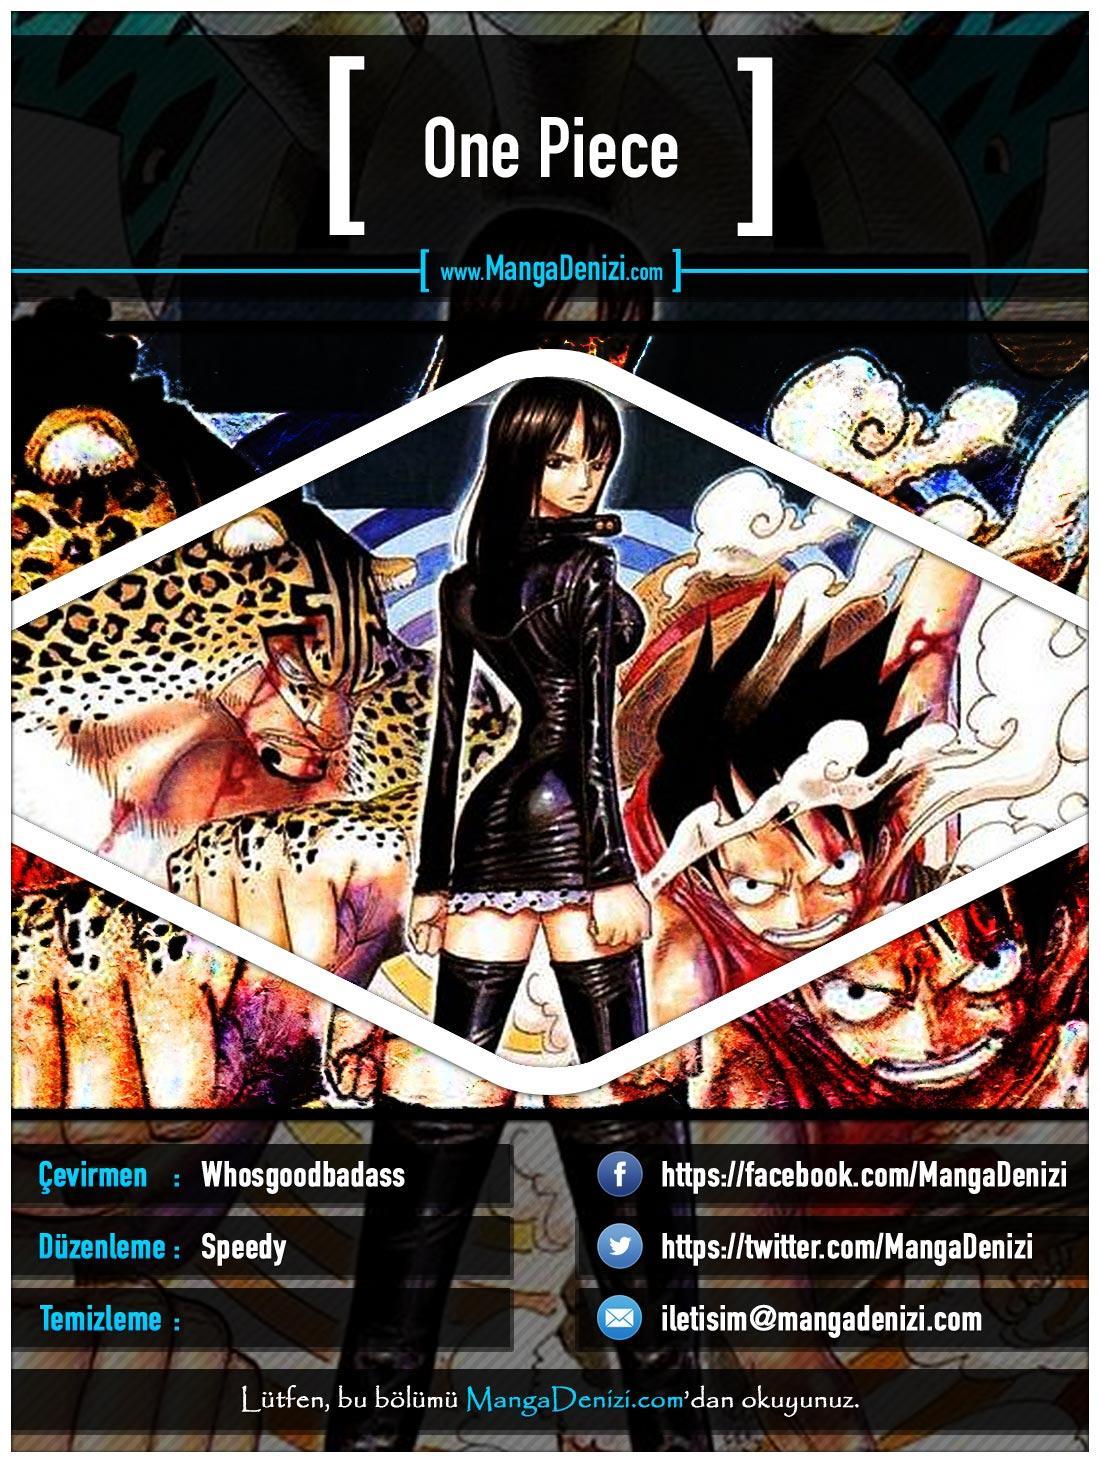 One Piece [Renkli] mangasının 0416 bölümünün 1. sayfasını okuyorsunuz.